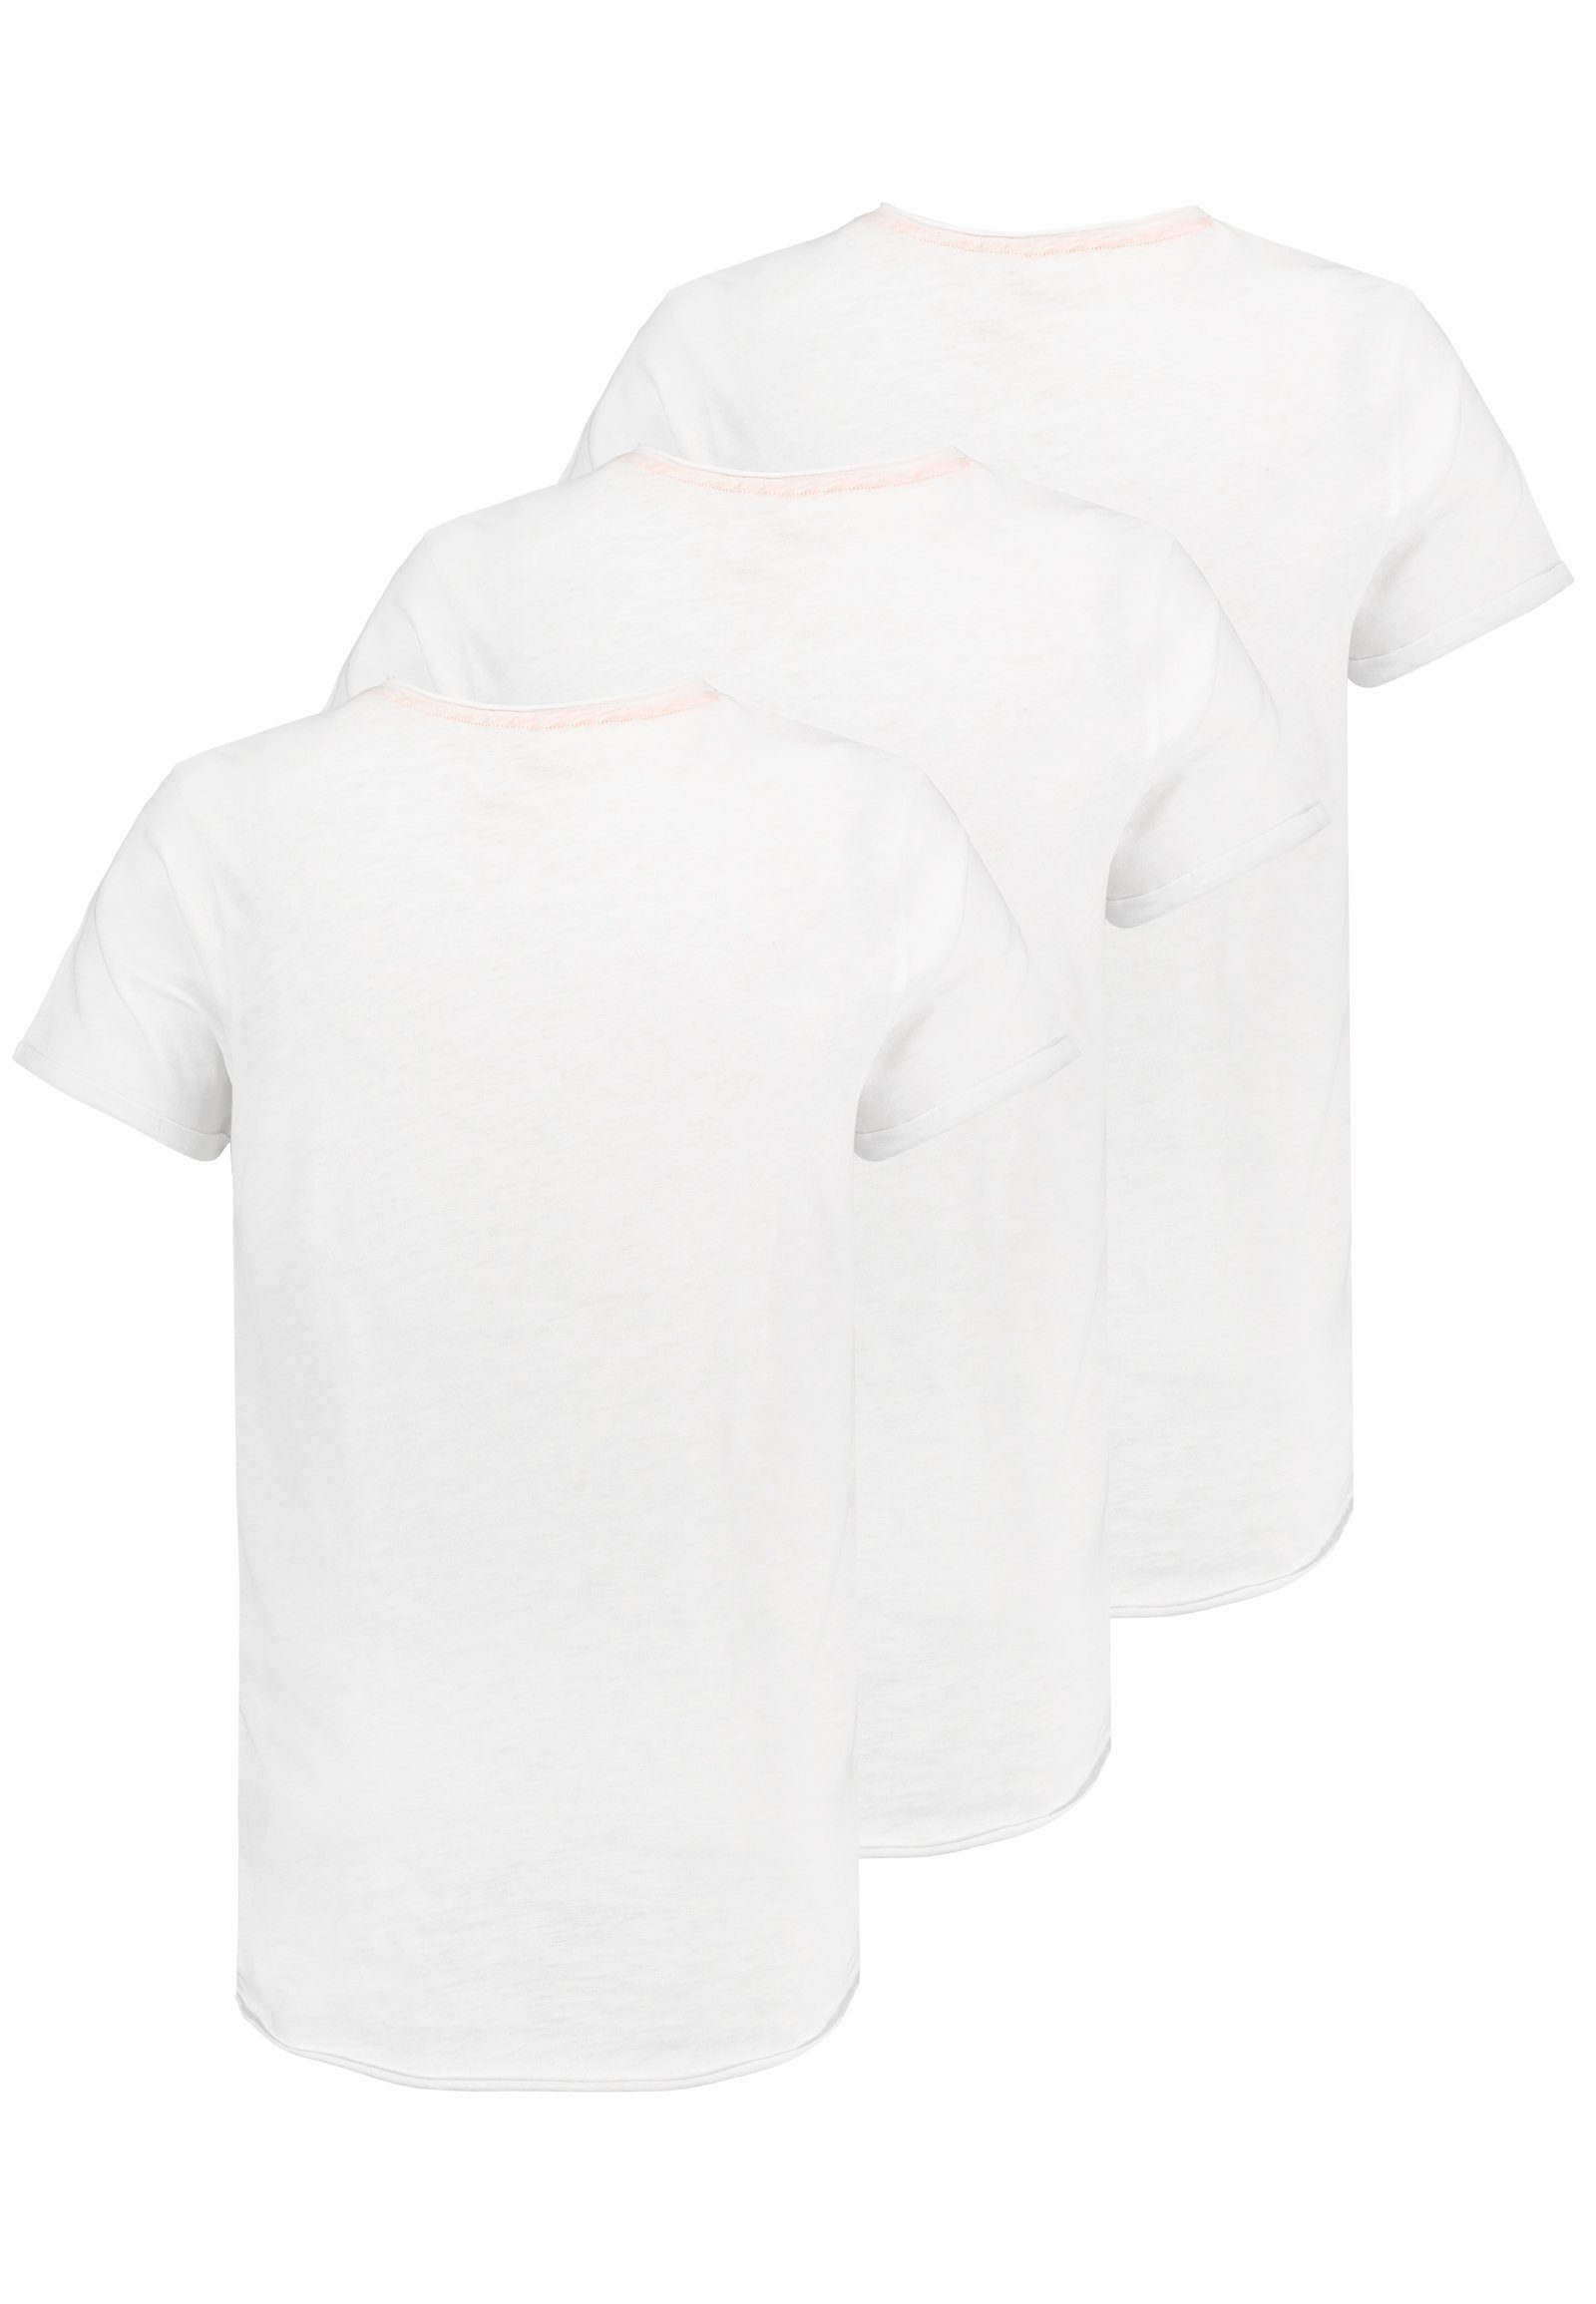 SUBLEVEL Kurzarmshirt Sublevel Herren T-Shirt kurz arm Shirt 3er Pack Freizeit Basic Baumwolle Sommer